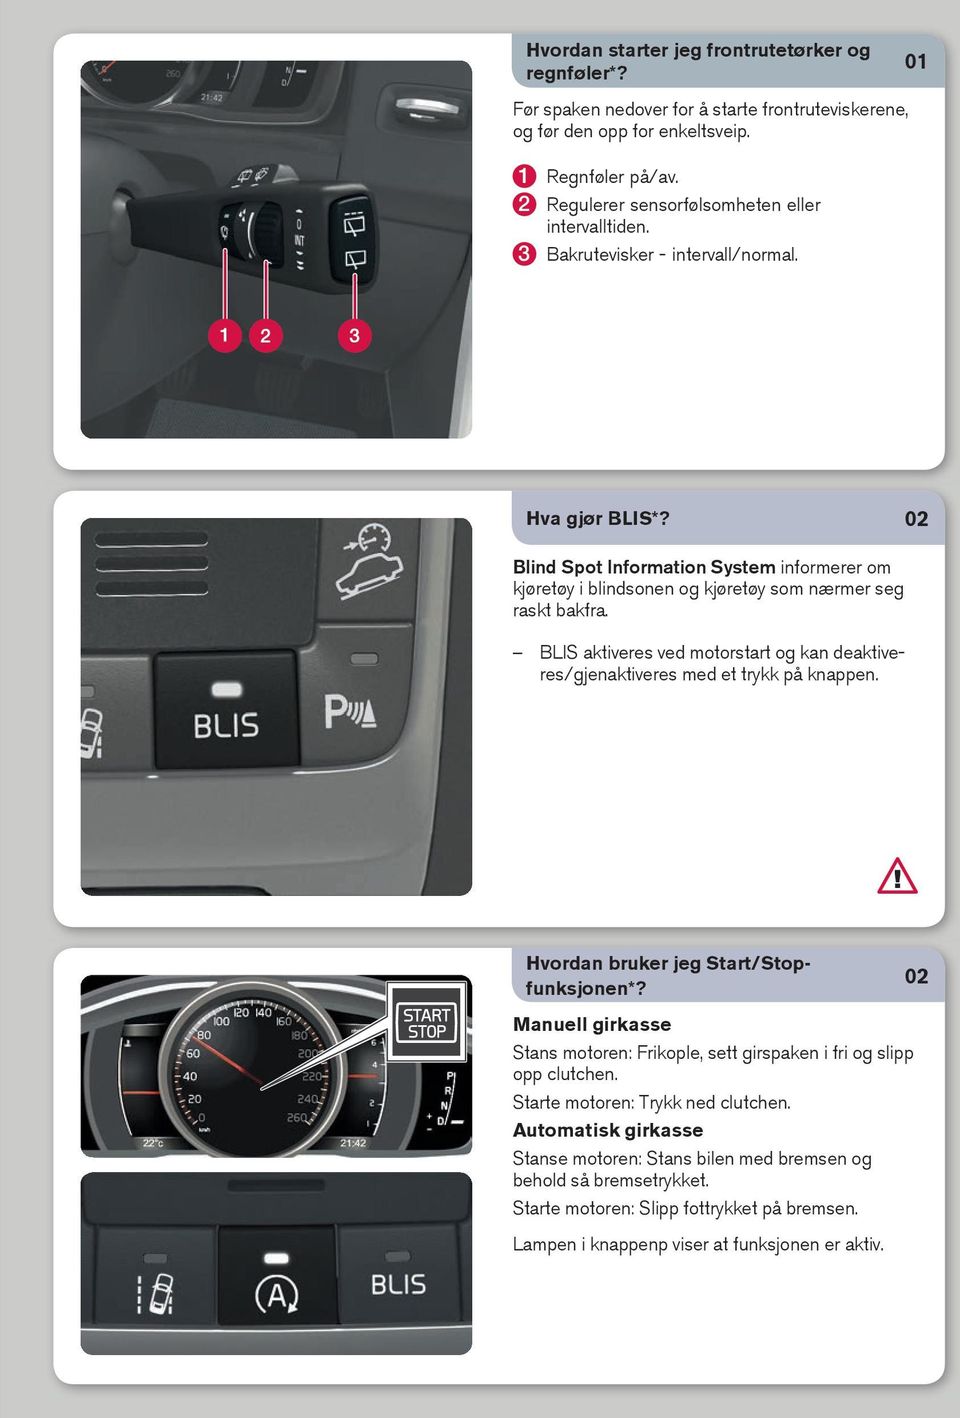 02 Blind Spot Information System informerer om kjøretøy i blindsonen og kjøretøy som nærmer seg raskt bakfra. BLIS aktiveres ved motorstart og kan deaktiveres/gjenaktiveres med et trykk på knappen.